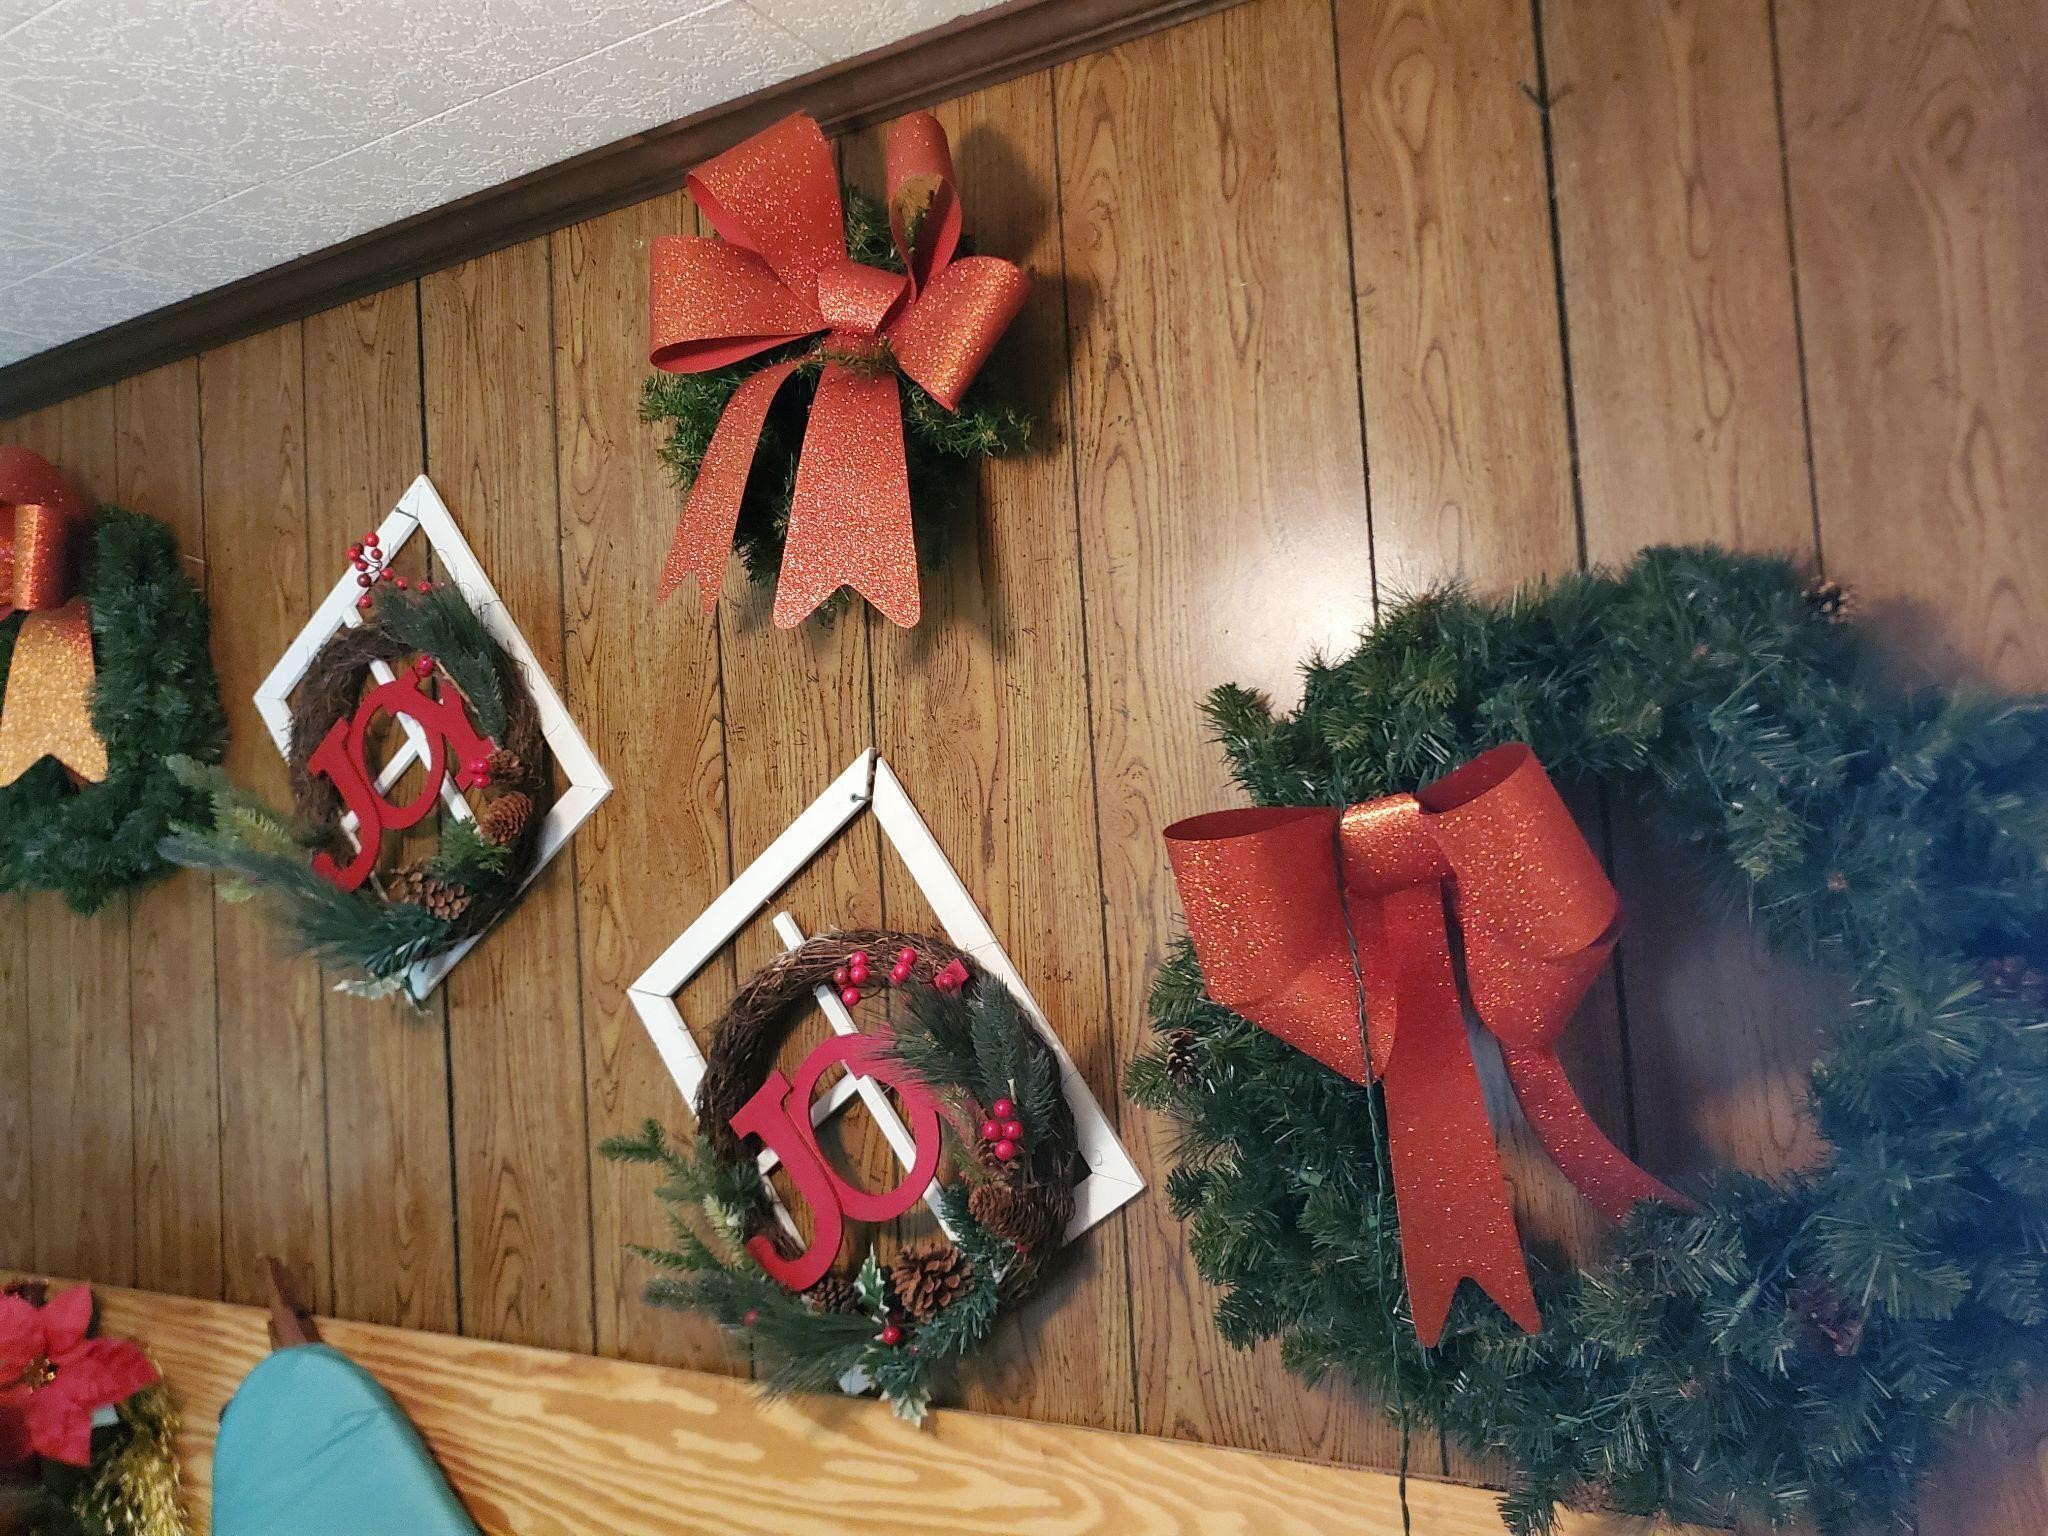 Wreaths Christmas decor on wall